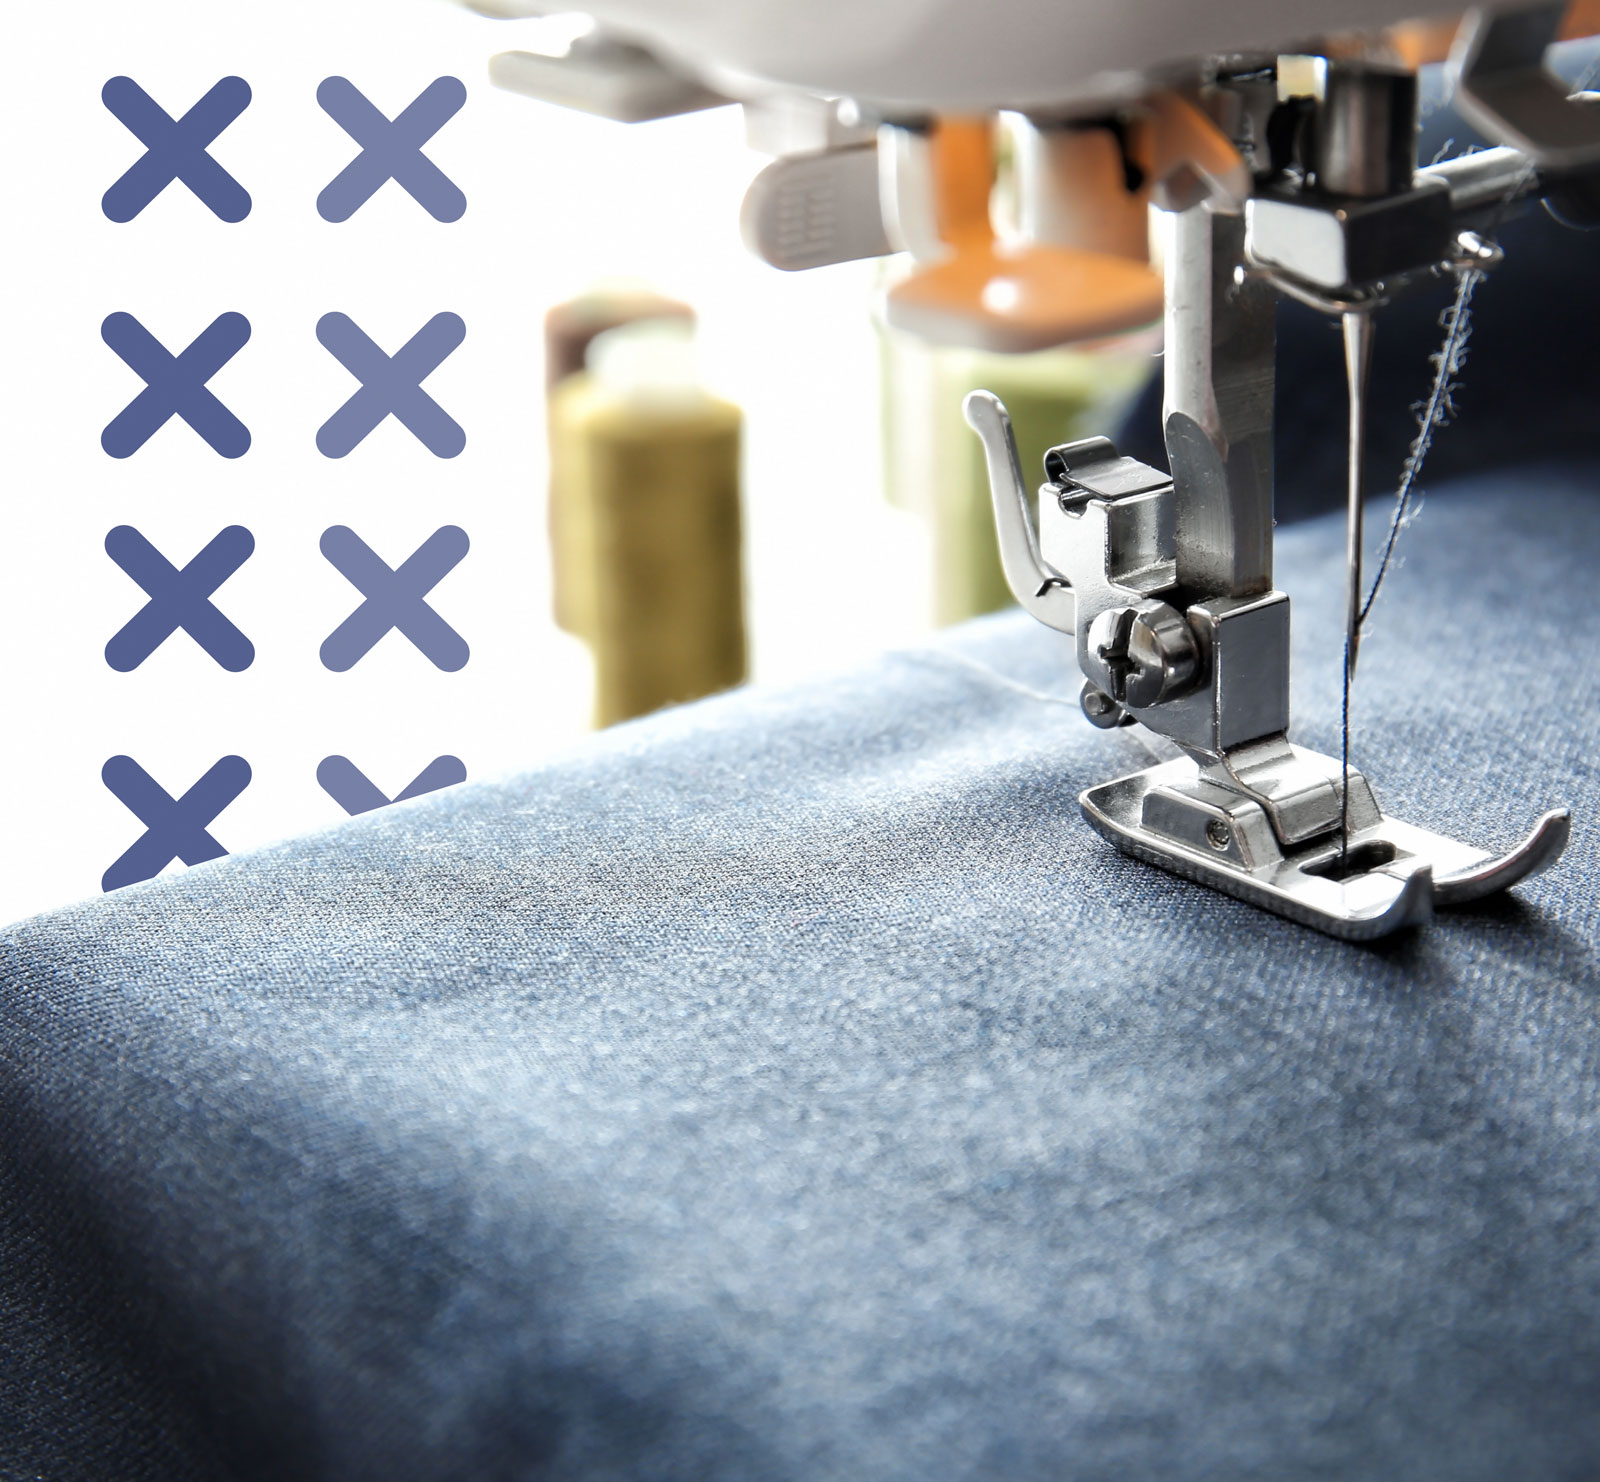 Macchine per cucire professionali: le migliori da scegliere - Il Blog di  David